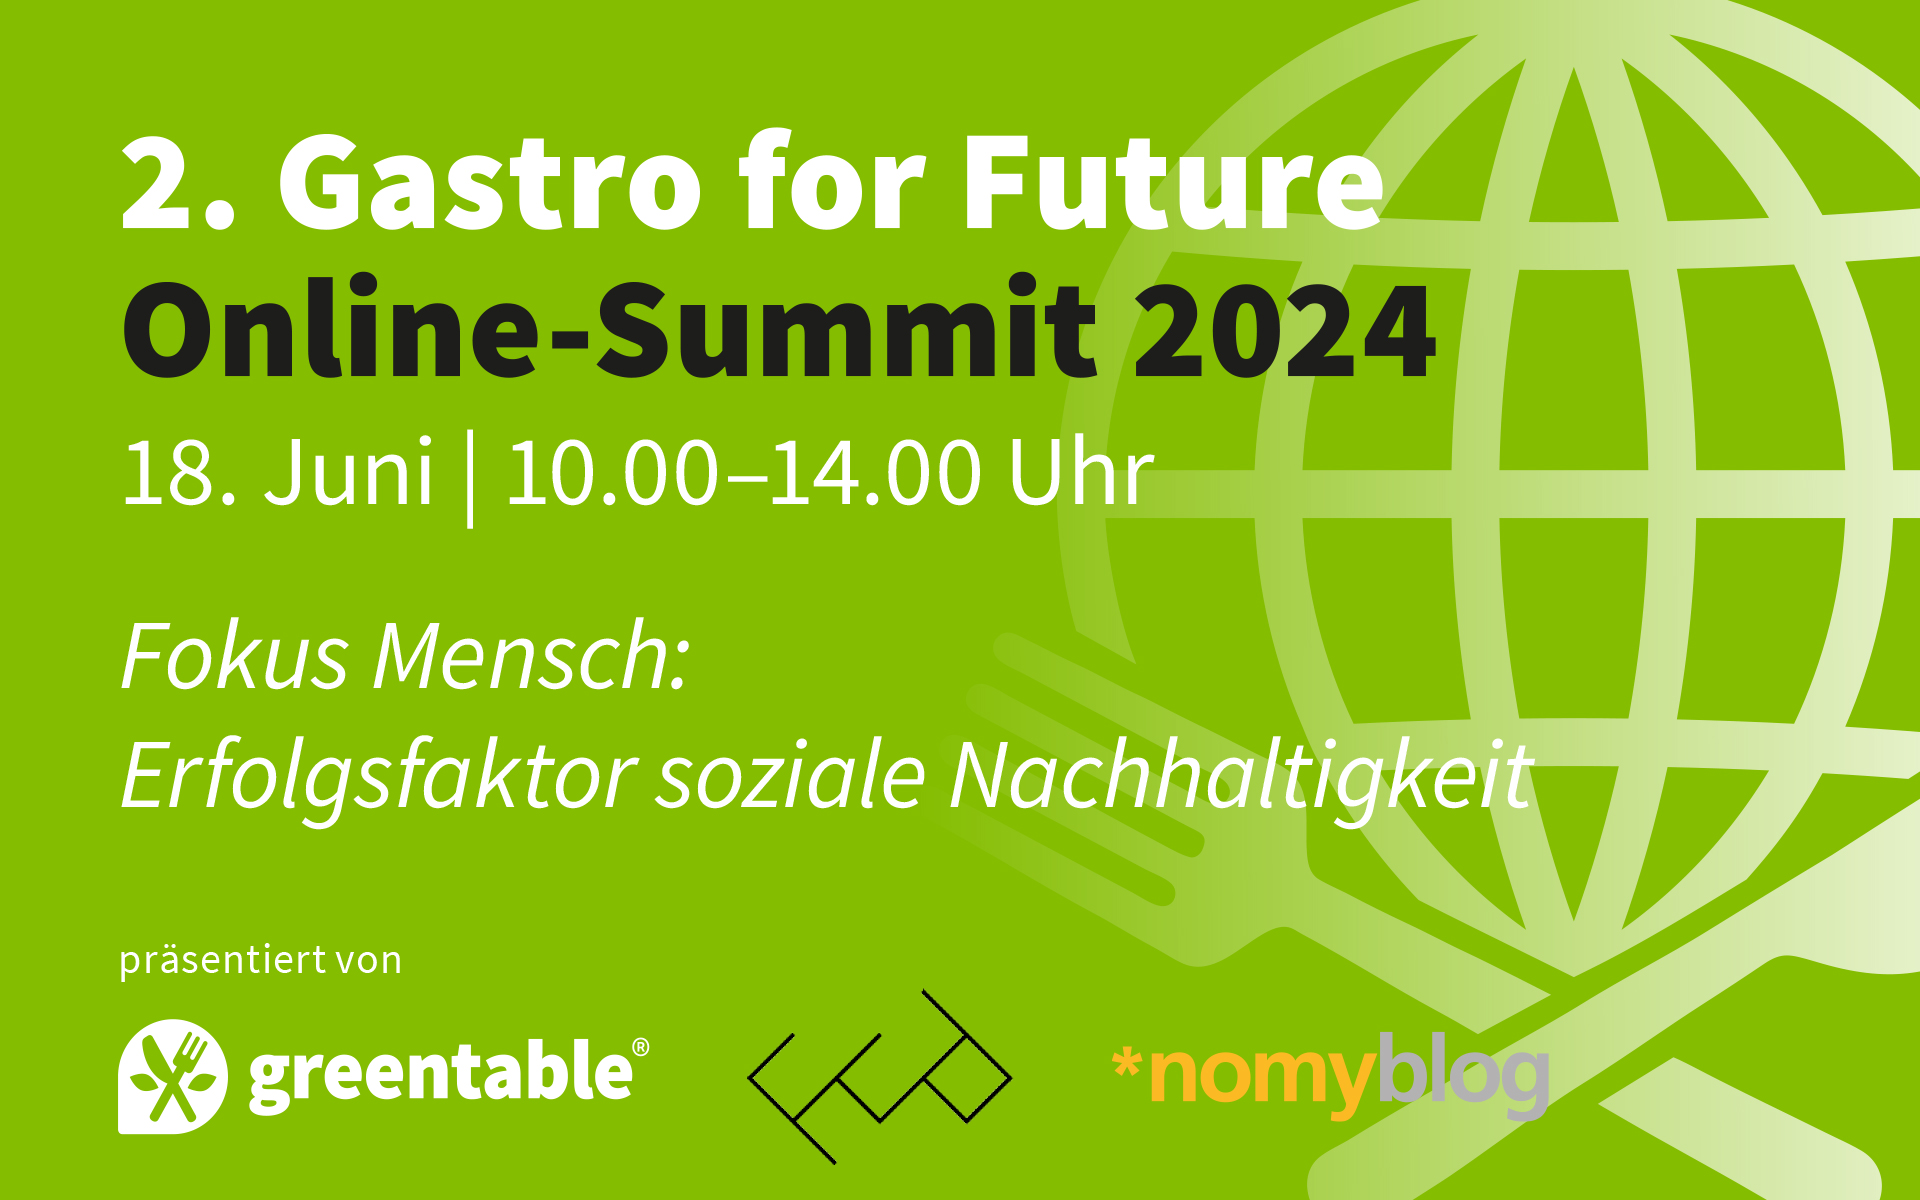 „Fokus Mensch: Erfolgsfaktor soziale Nachhaltigkeit“ ist Thema des 2. Gastro for Future Online-Summits von Greentable am 18. Juni 2024